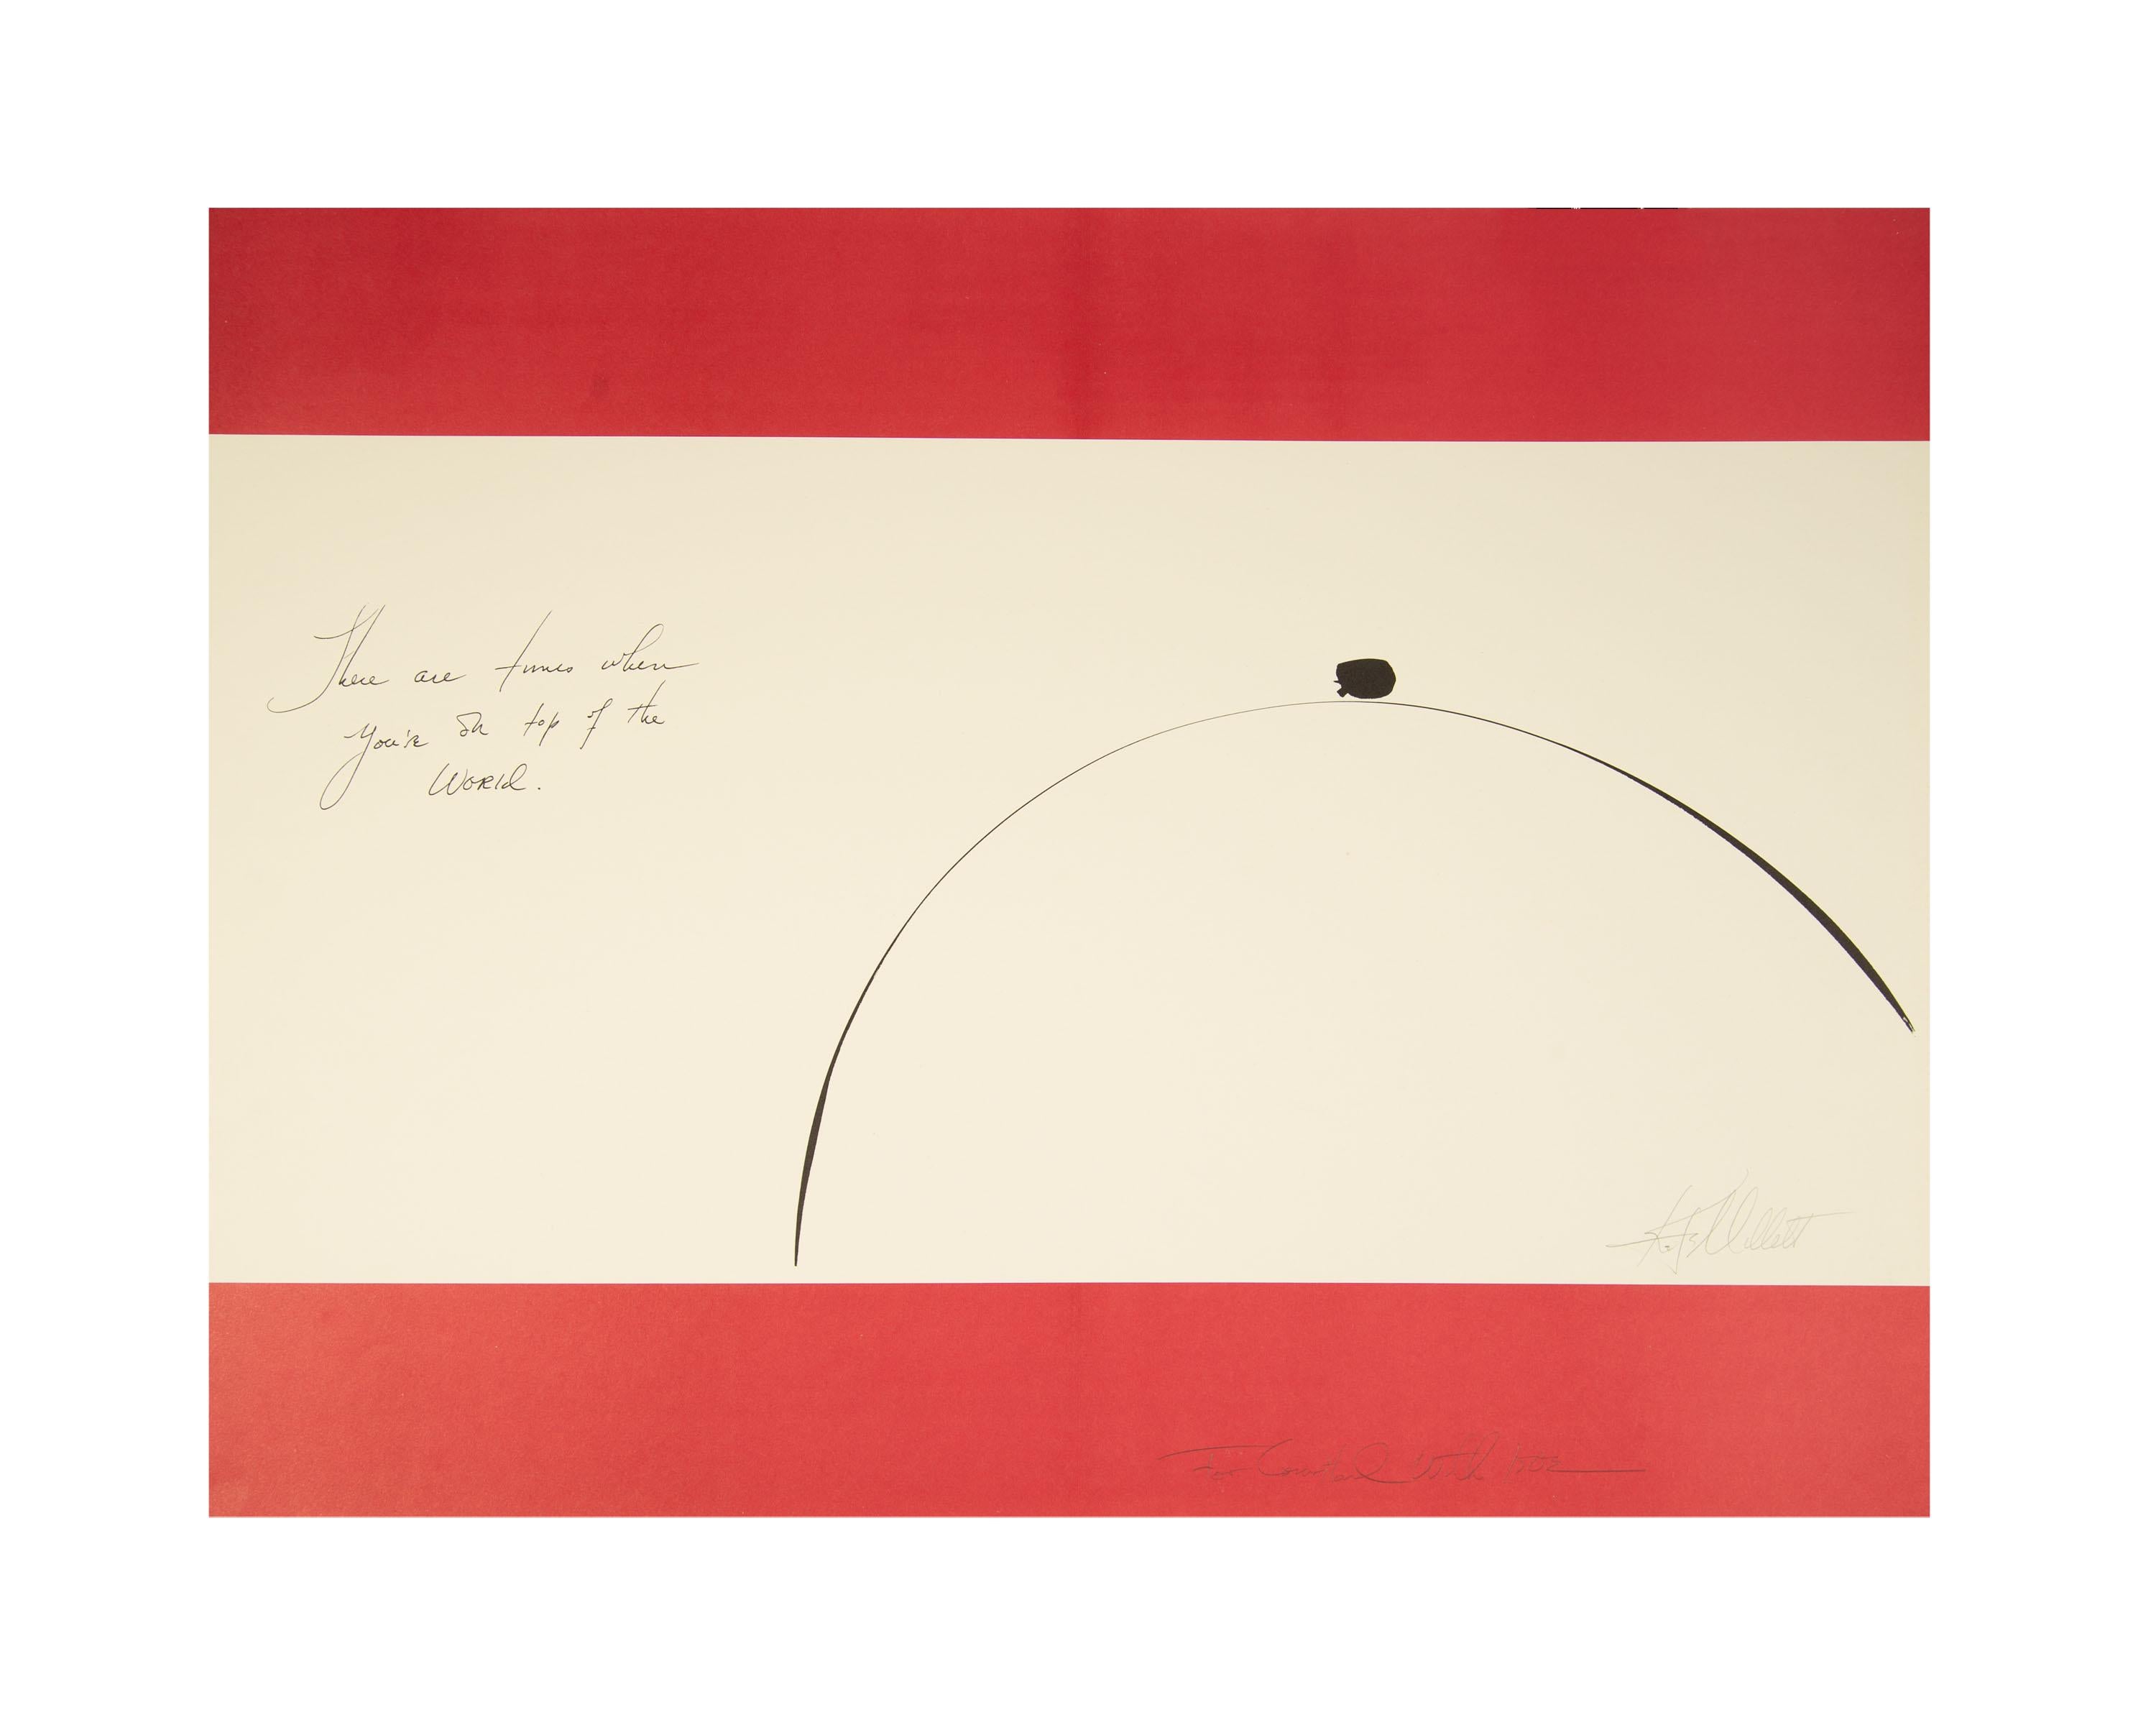 Eine signierte und beschriftete Lithografie auf Papier der amerikanischen feministischen Schriftstellerin, Theoretikerin, Künstlerin und Wissenschaftlerin Kate Millett (1934 - 2017). In diesem Werk wird eine abstrakte Brust in einem minimalistischen